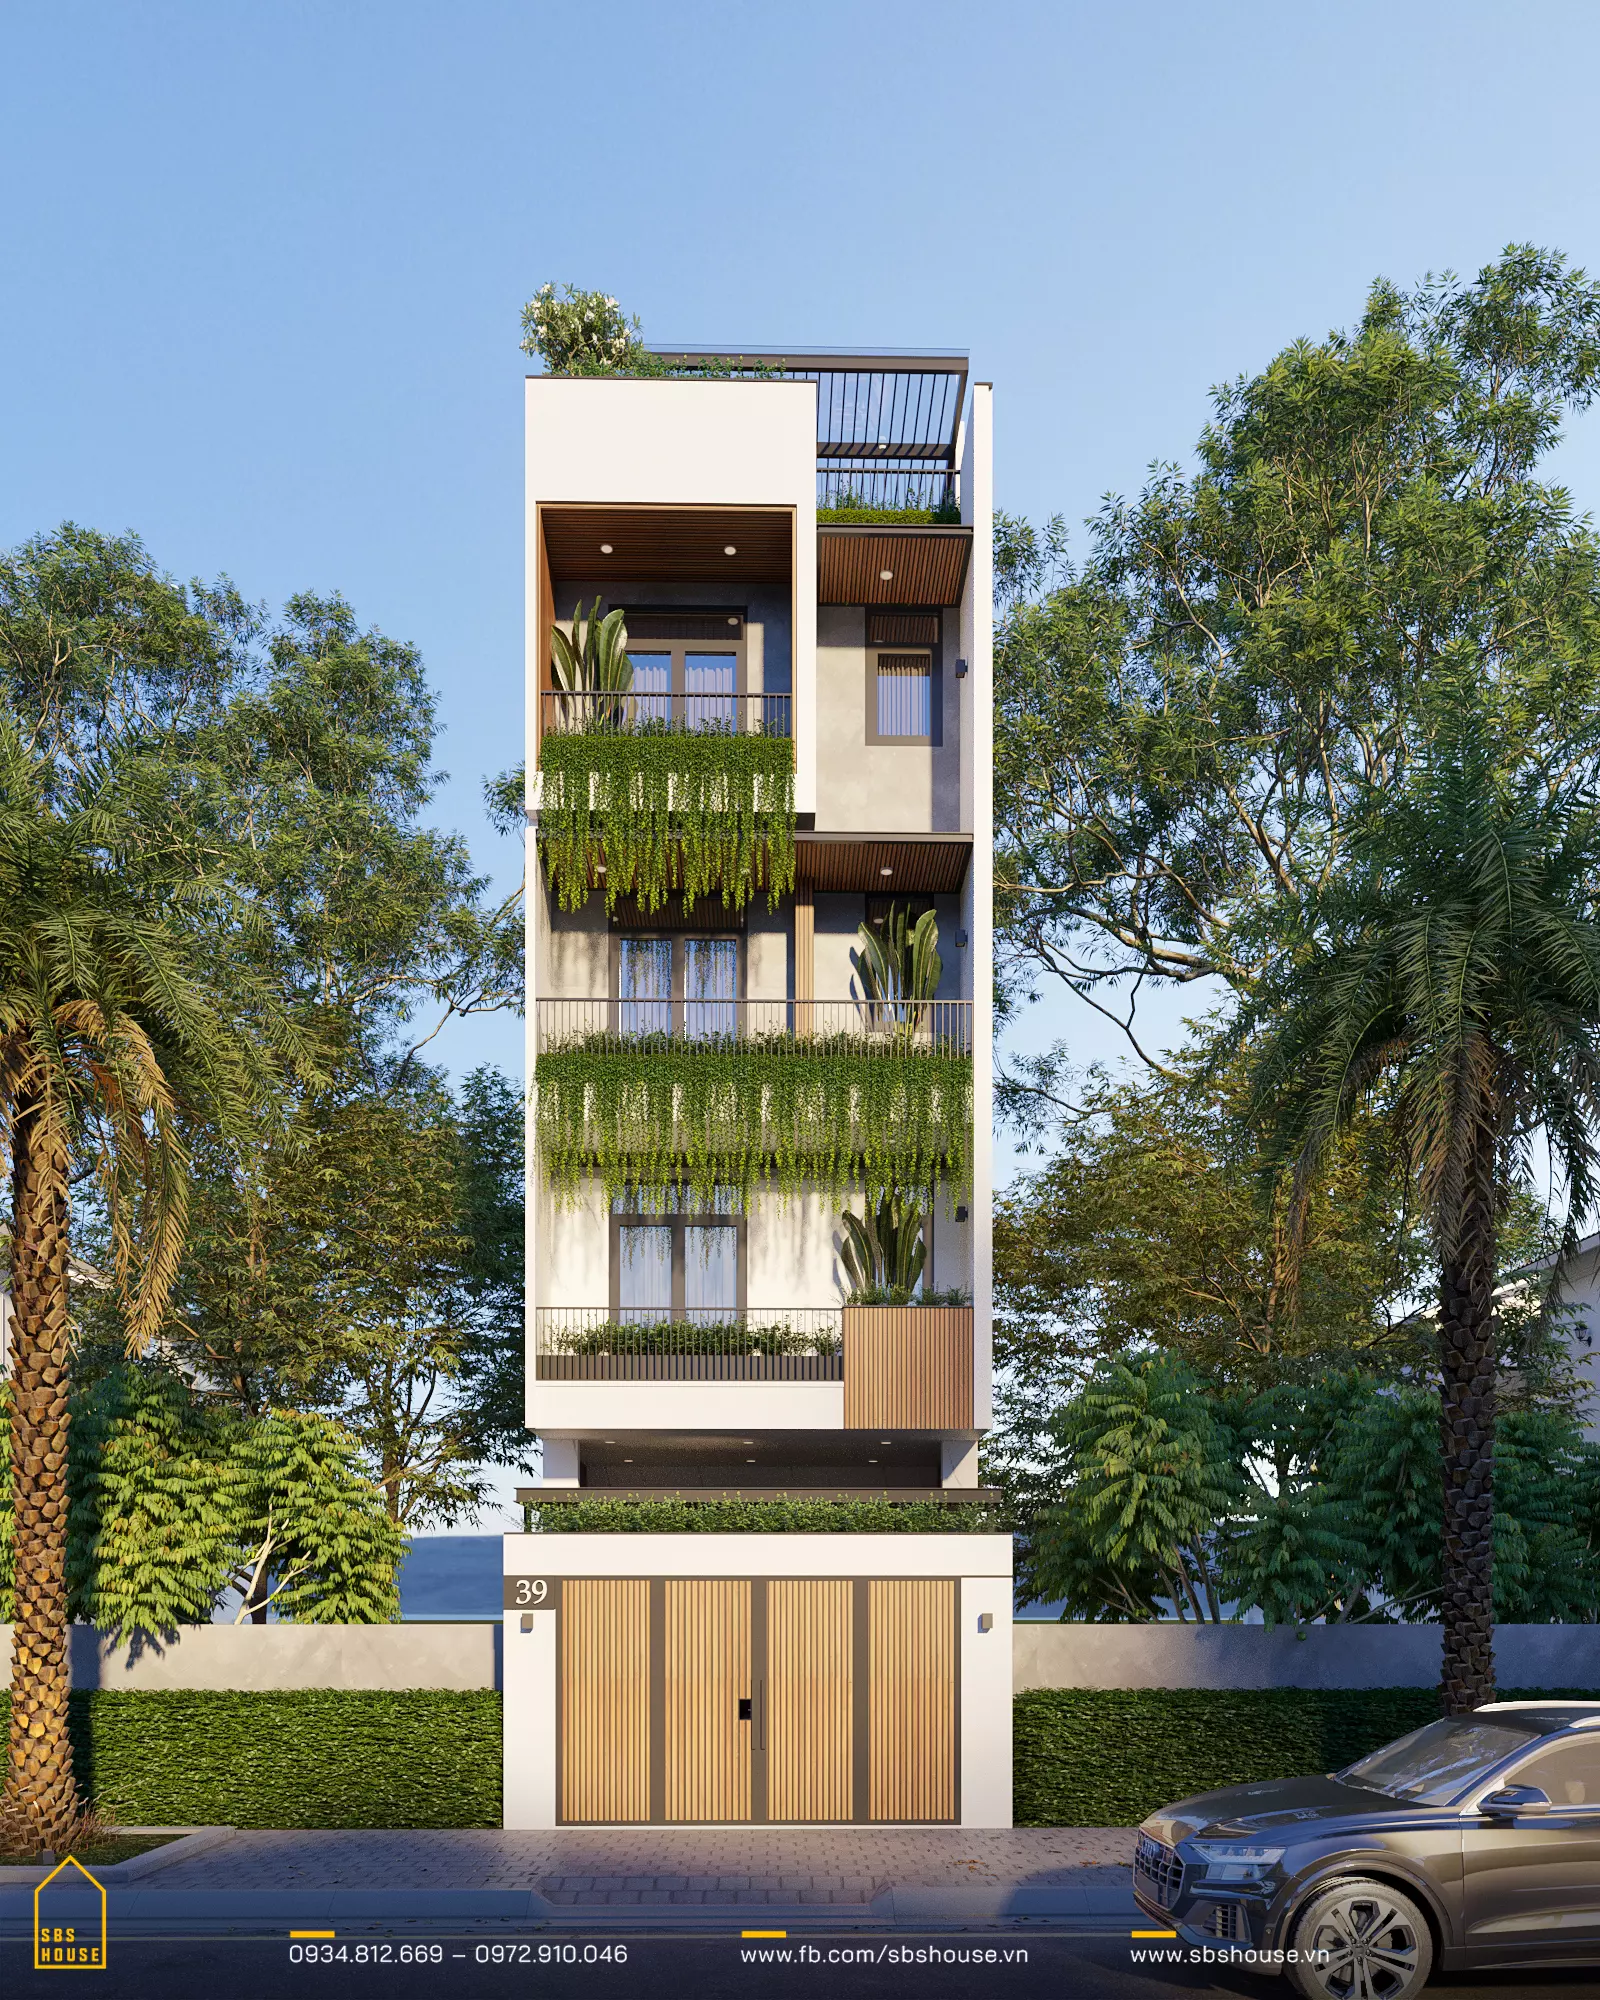 Với lớp cây xanh và khuôn viên xanh mướt bao quanh, ngôi nhà này trở thành một ốc đảo trong khu đô thị, mang lại không khí tươi mát và làm dịu mắt.